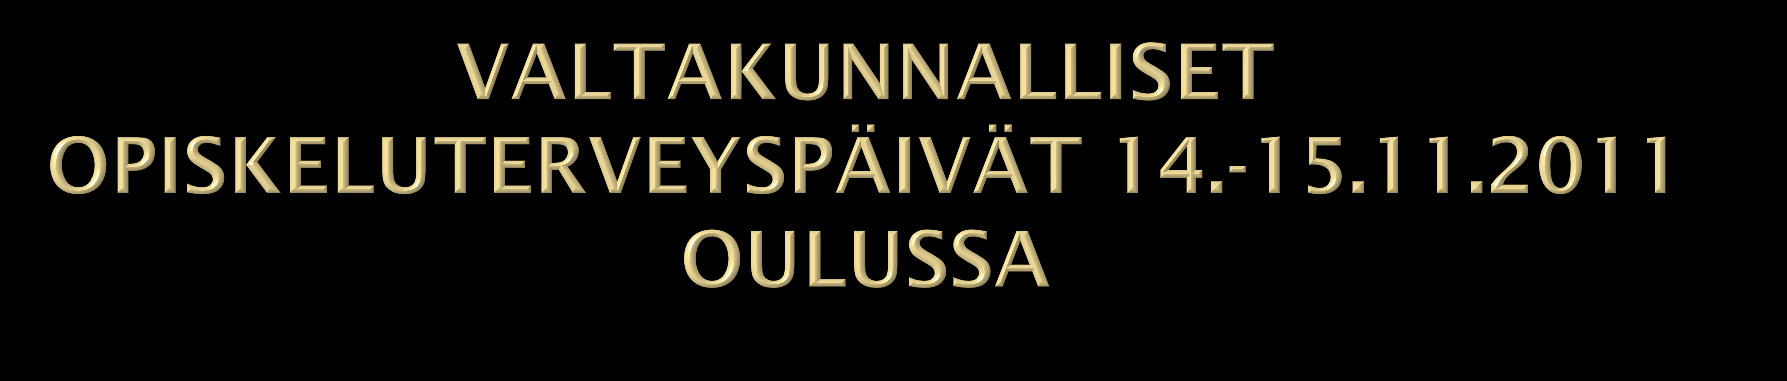 Pohjois-Suomen aluehallintoviraston